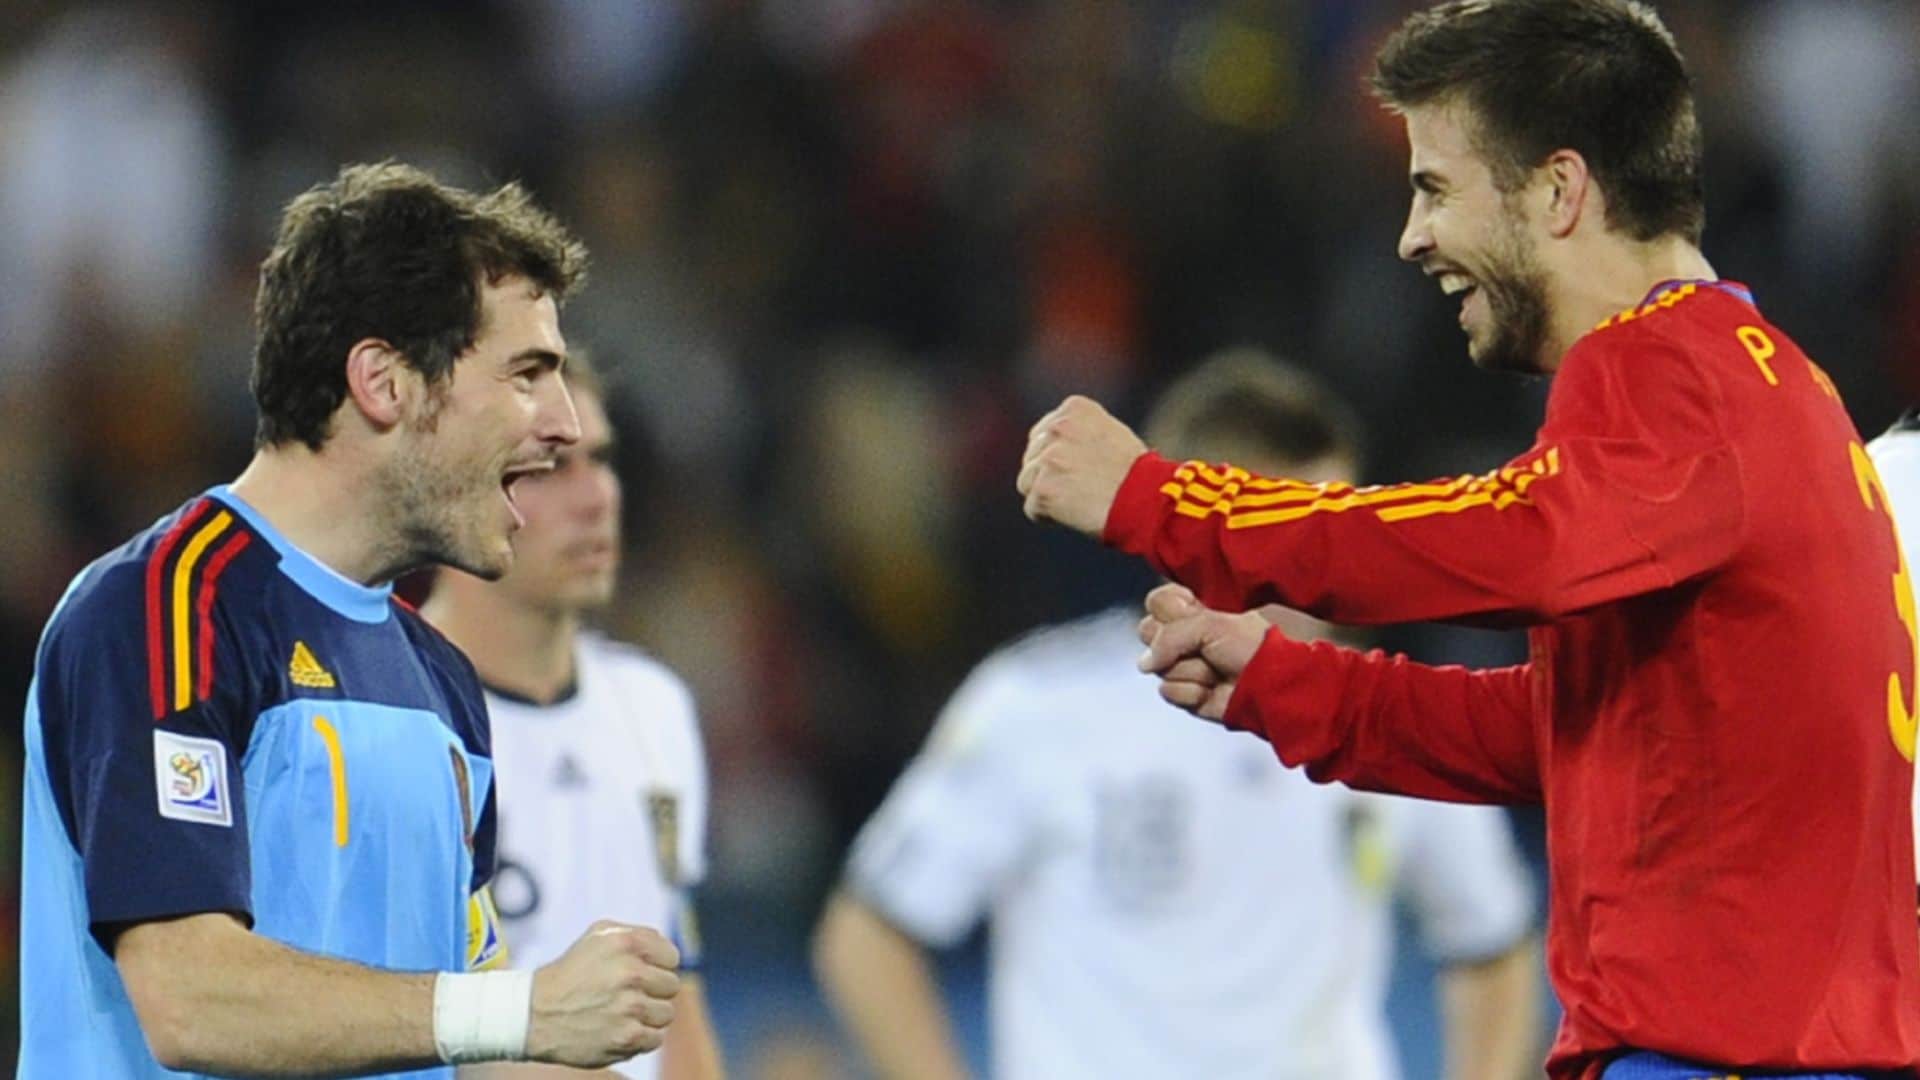 Nuevo capítulo en el 'troleo' de Iker Casillas y Gerard Piqué